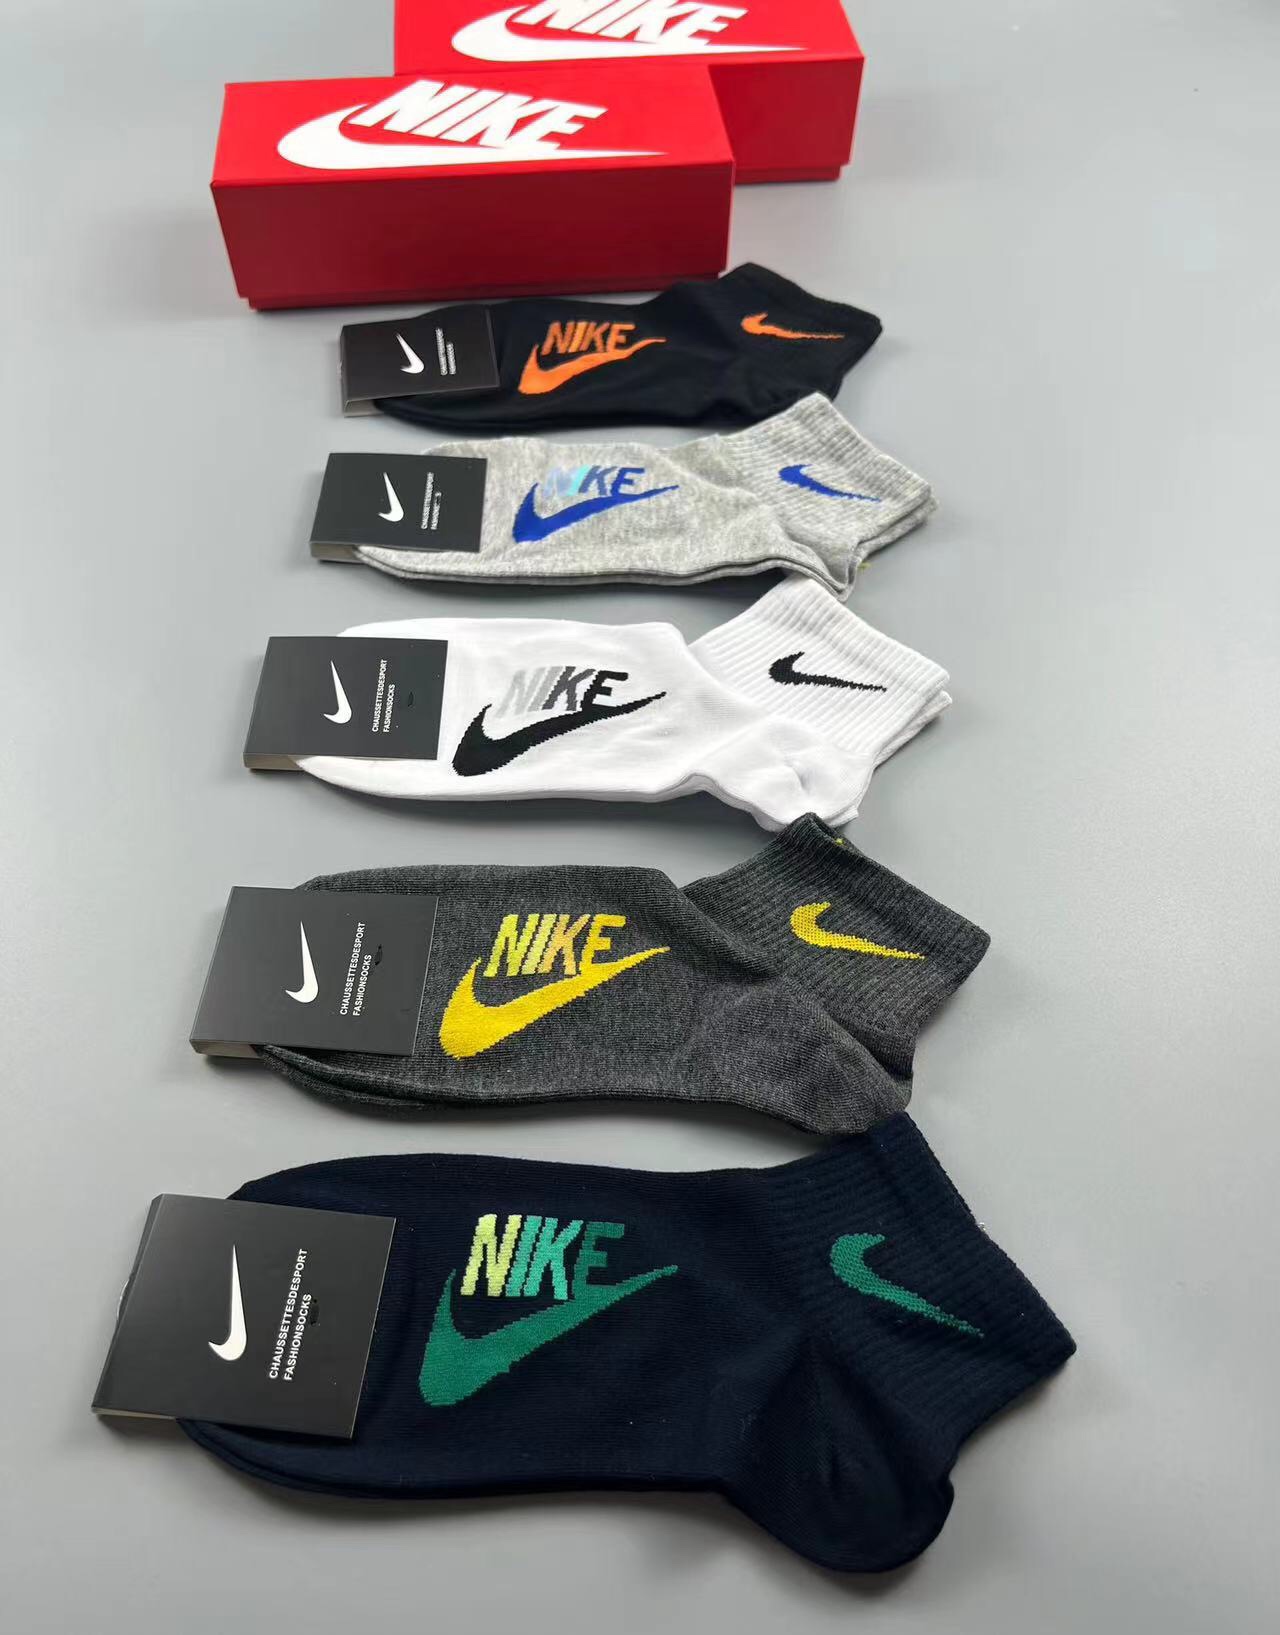 Nike耐克️永远的经典永远的️️精梳棉材质透气吸汗柔软舒适上脚非常nice️商务风潮送领导送长辈首选️